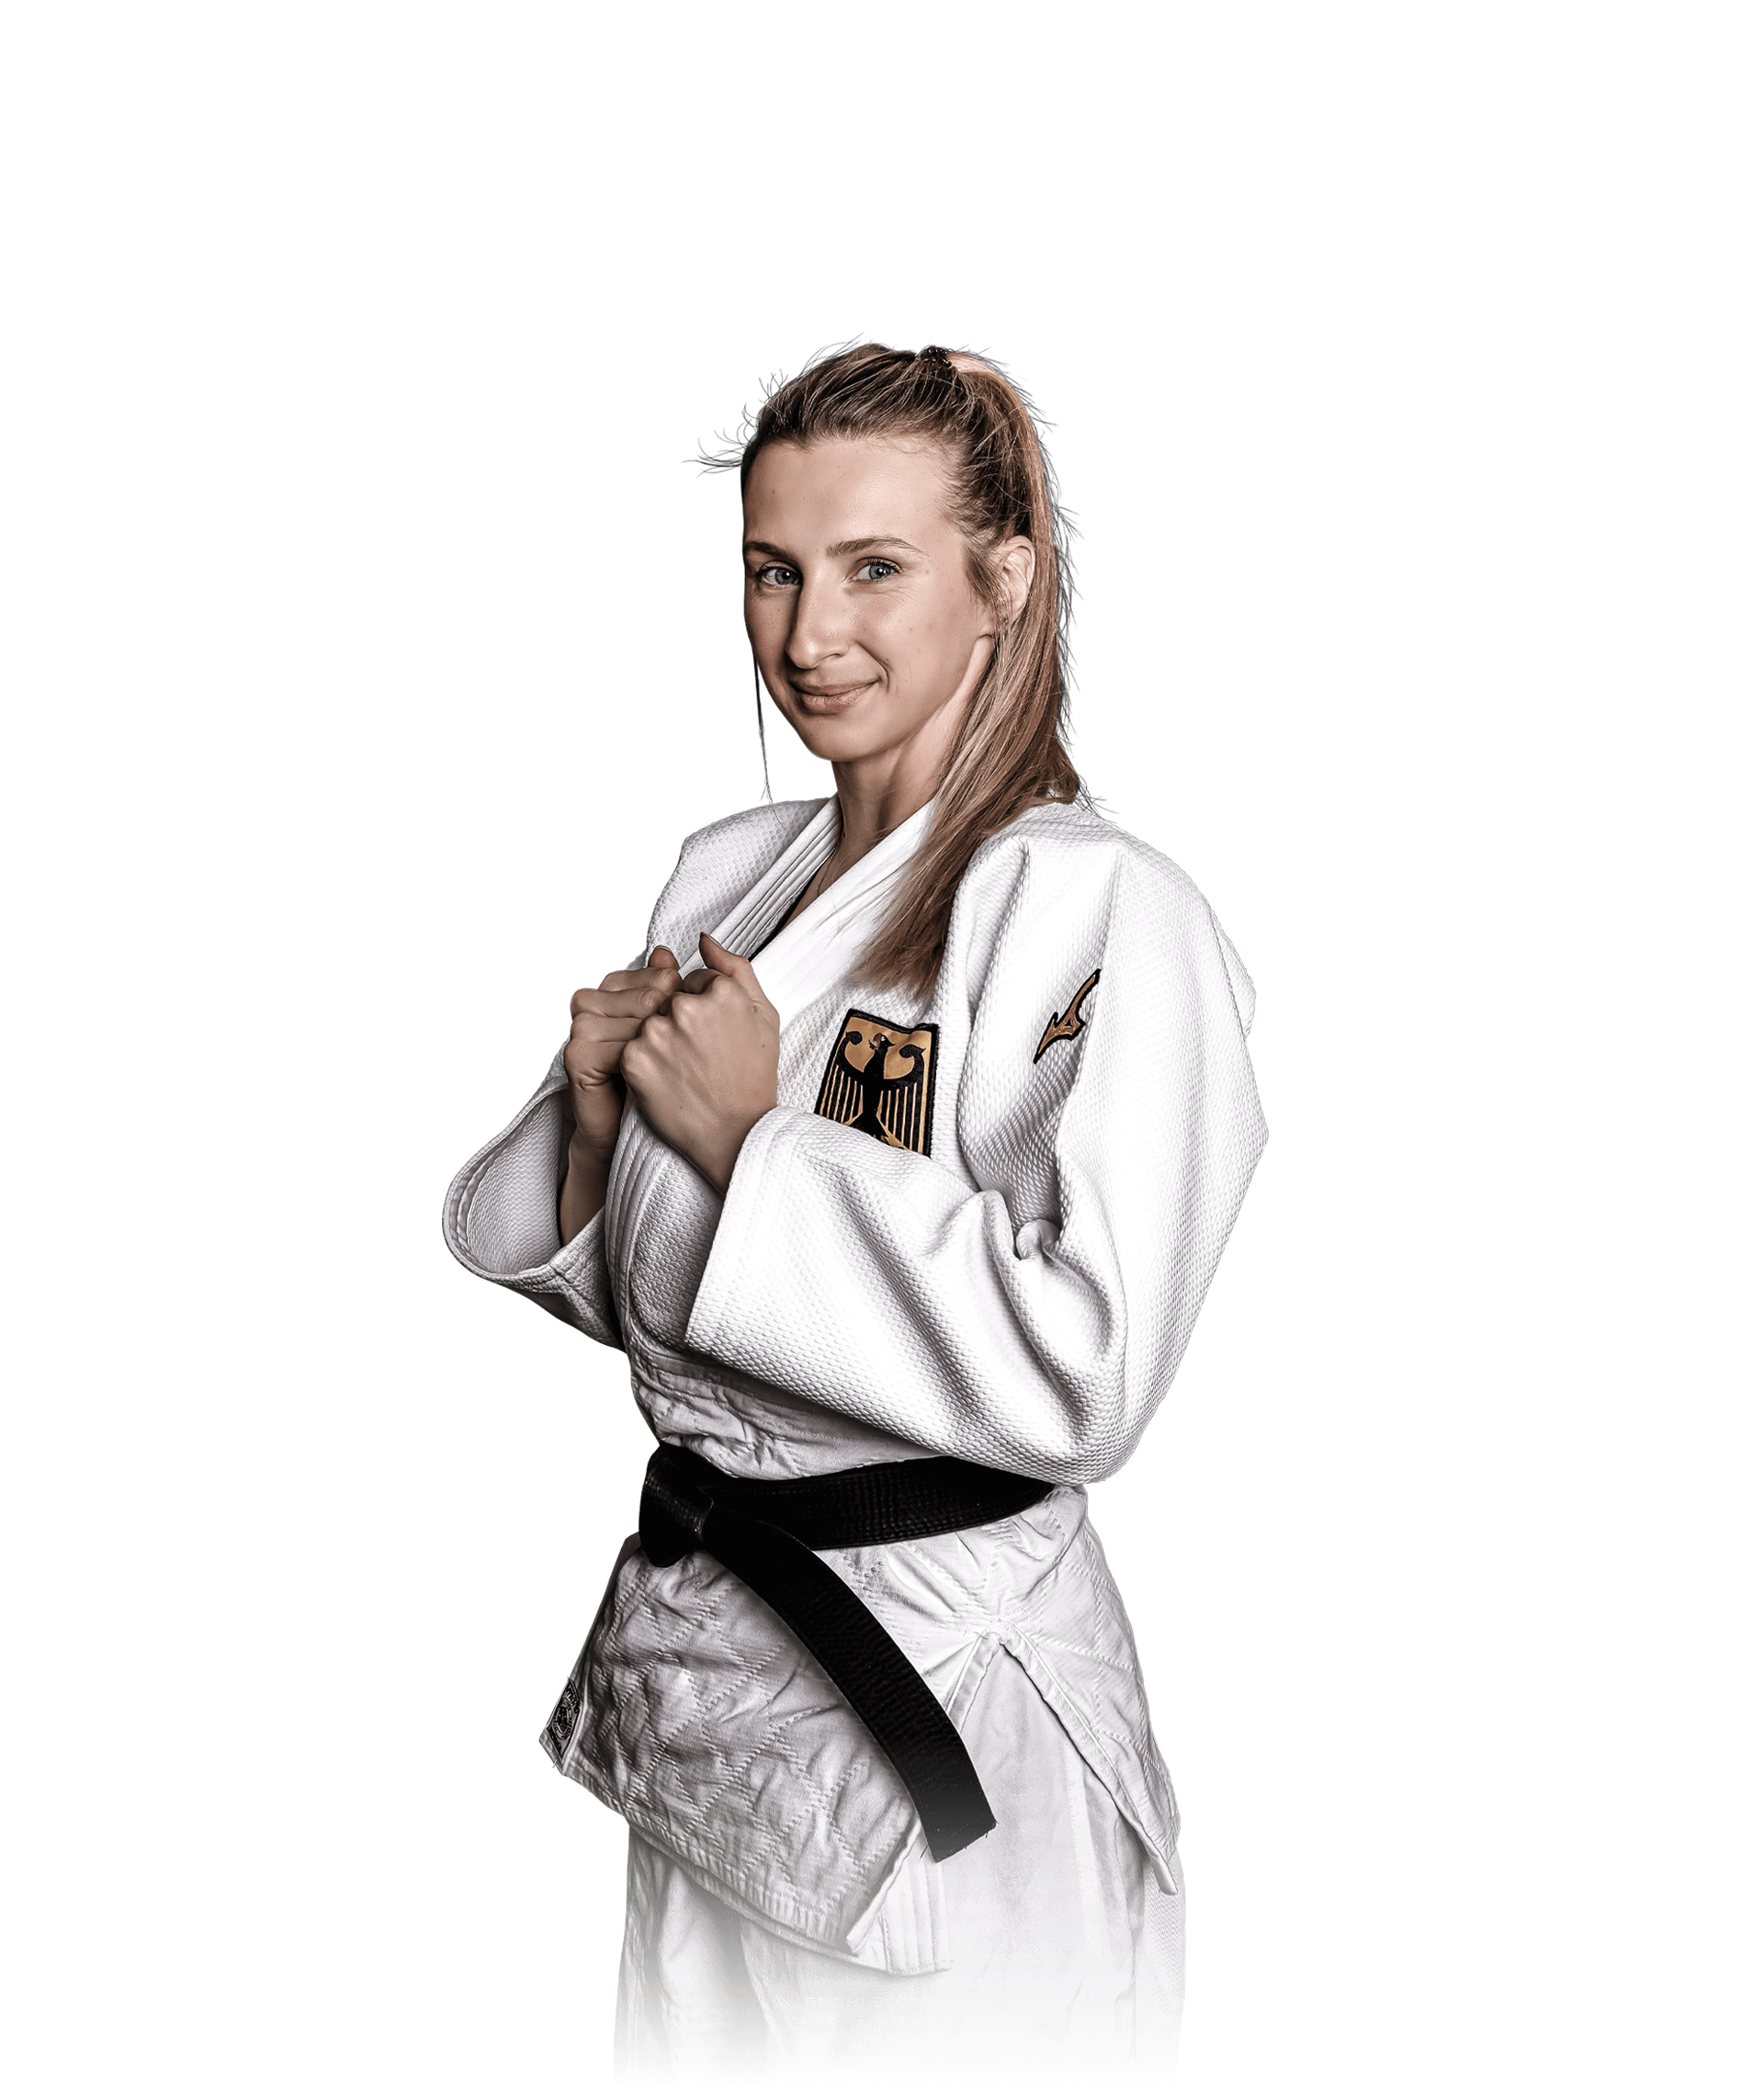 Porträt Judoka Martyna Trajdos